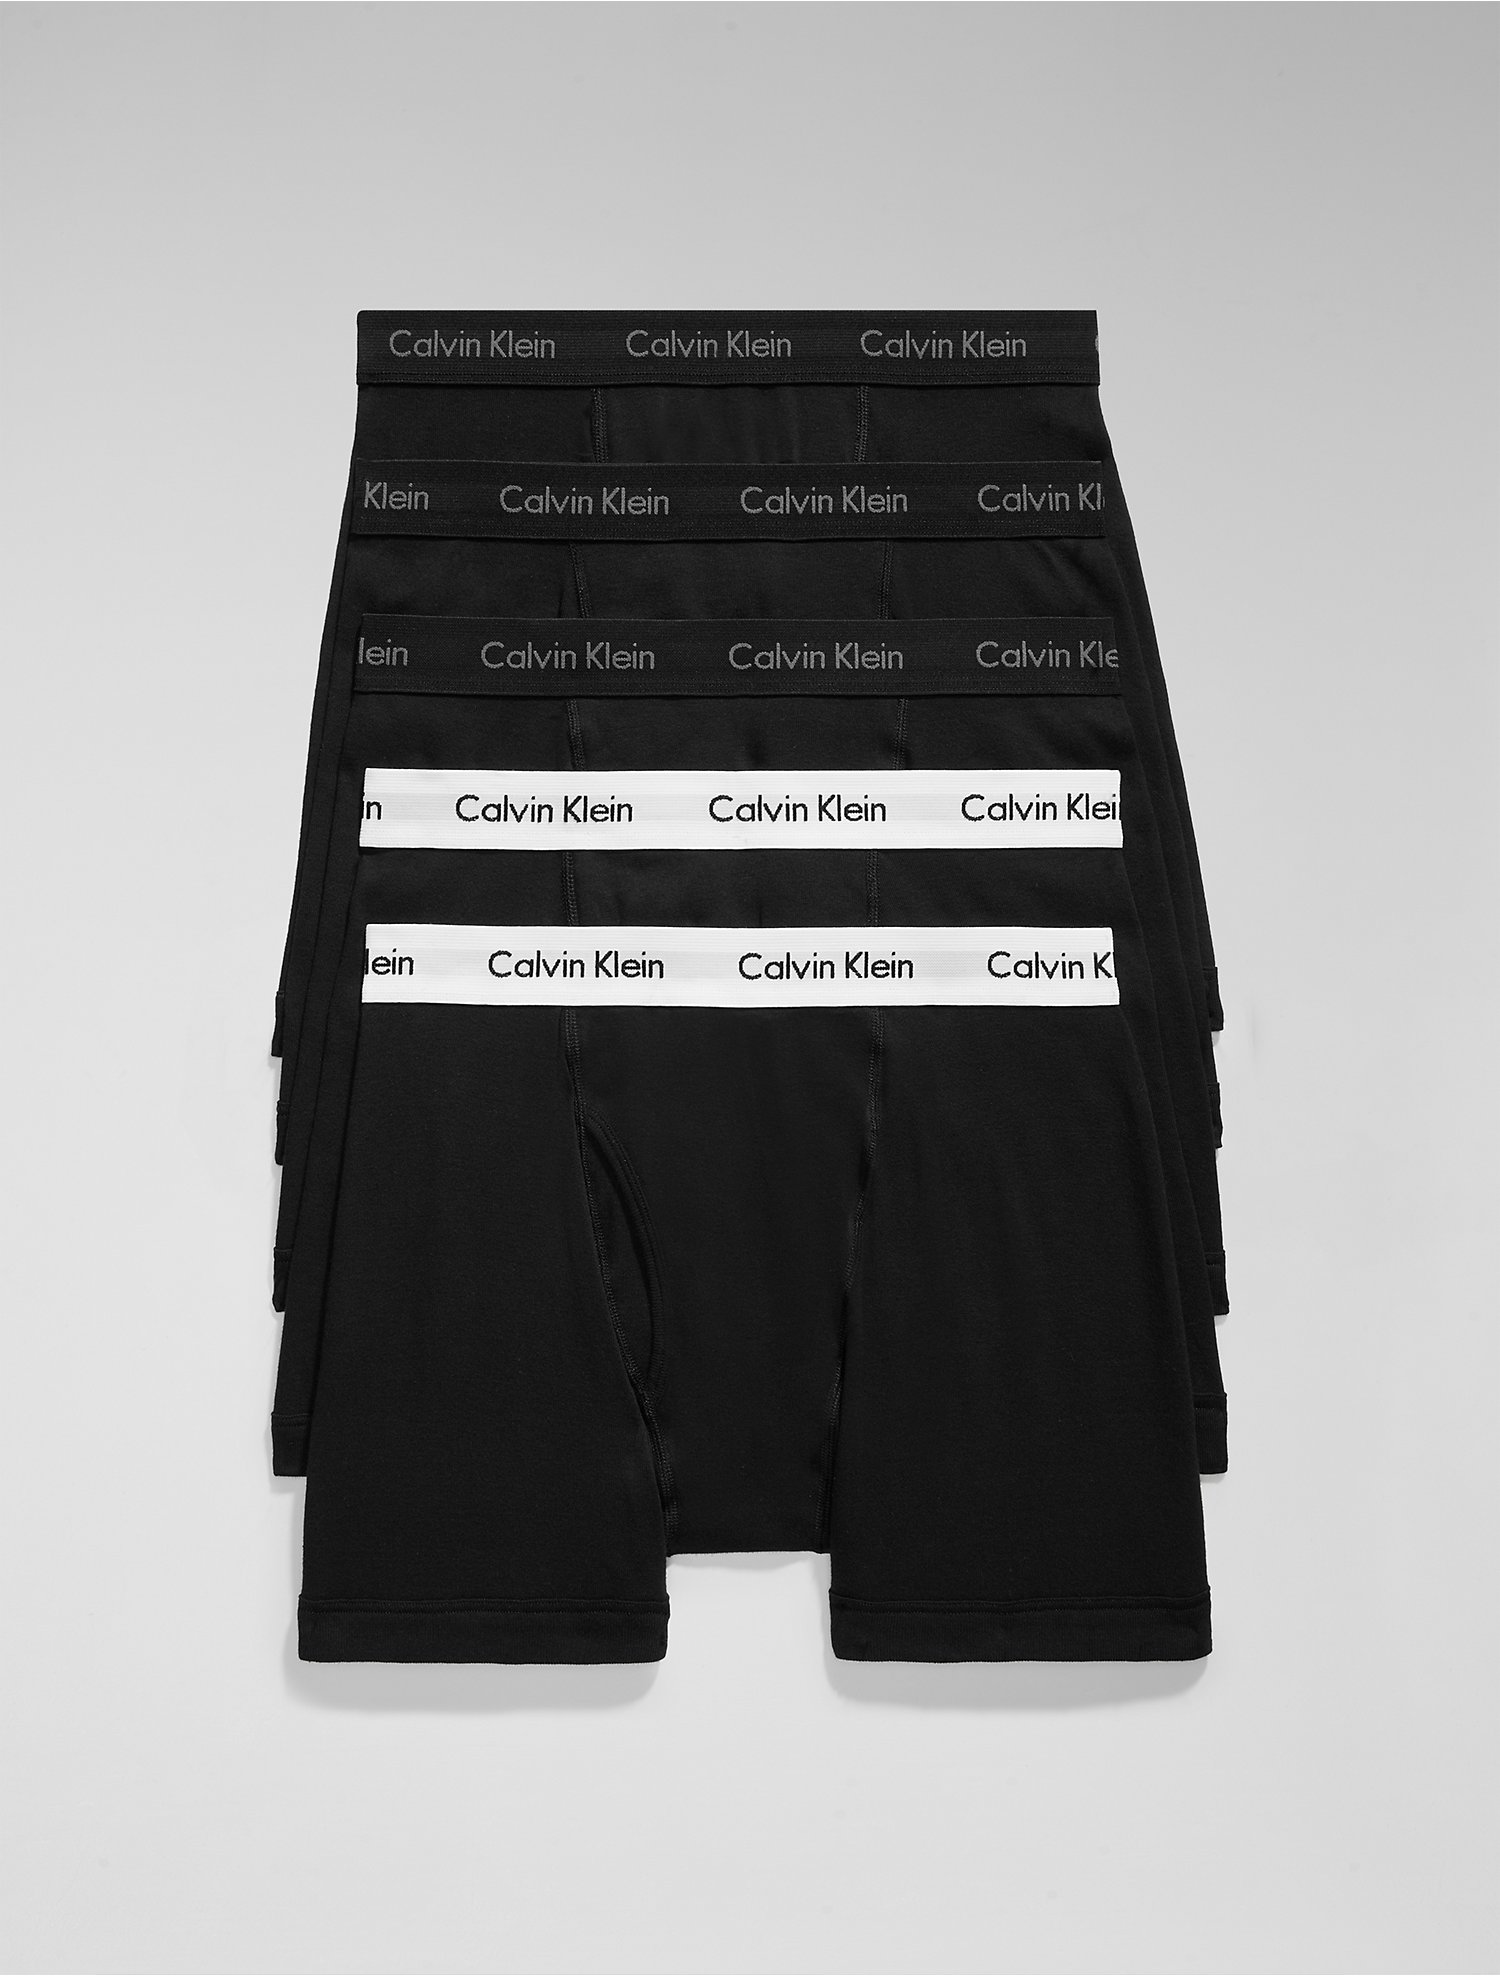 Introducir 33+ imagen 5 pack calvin klein underwear